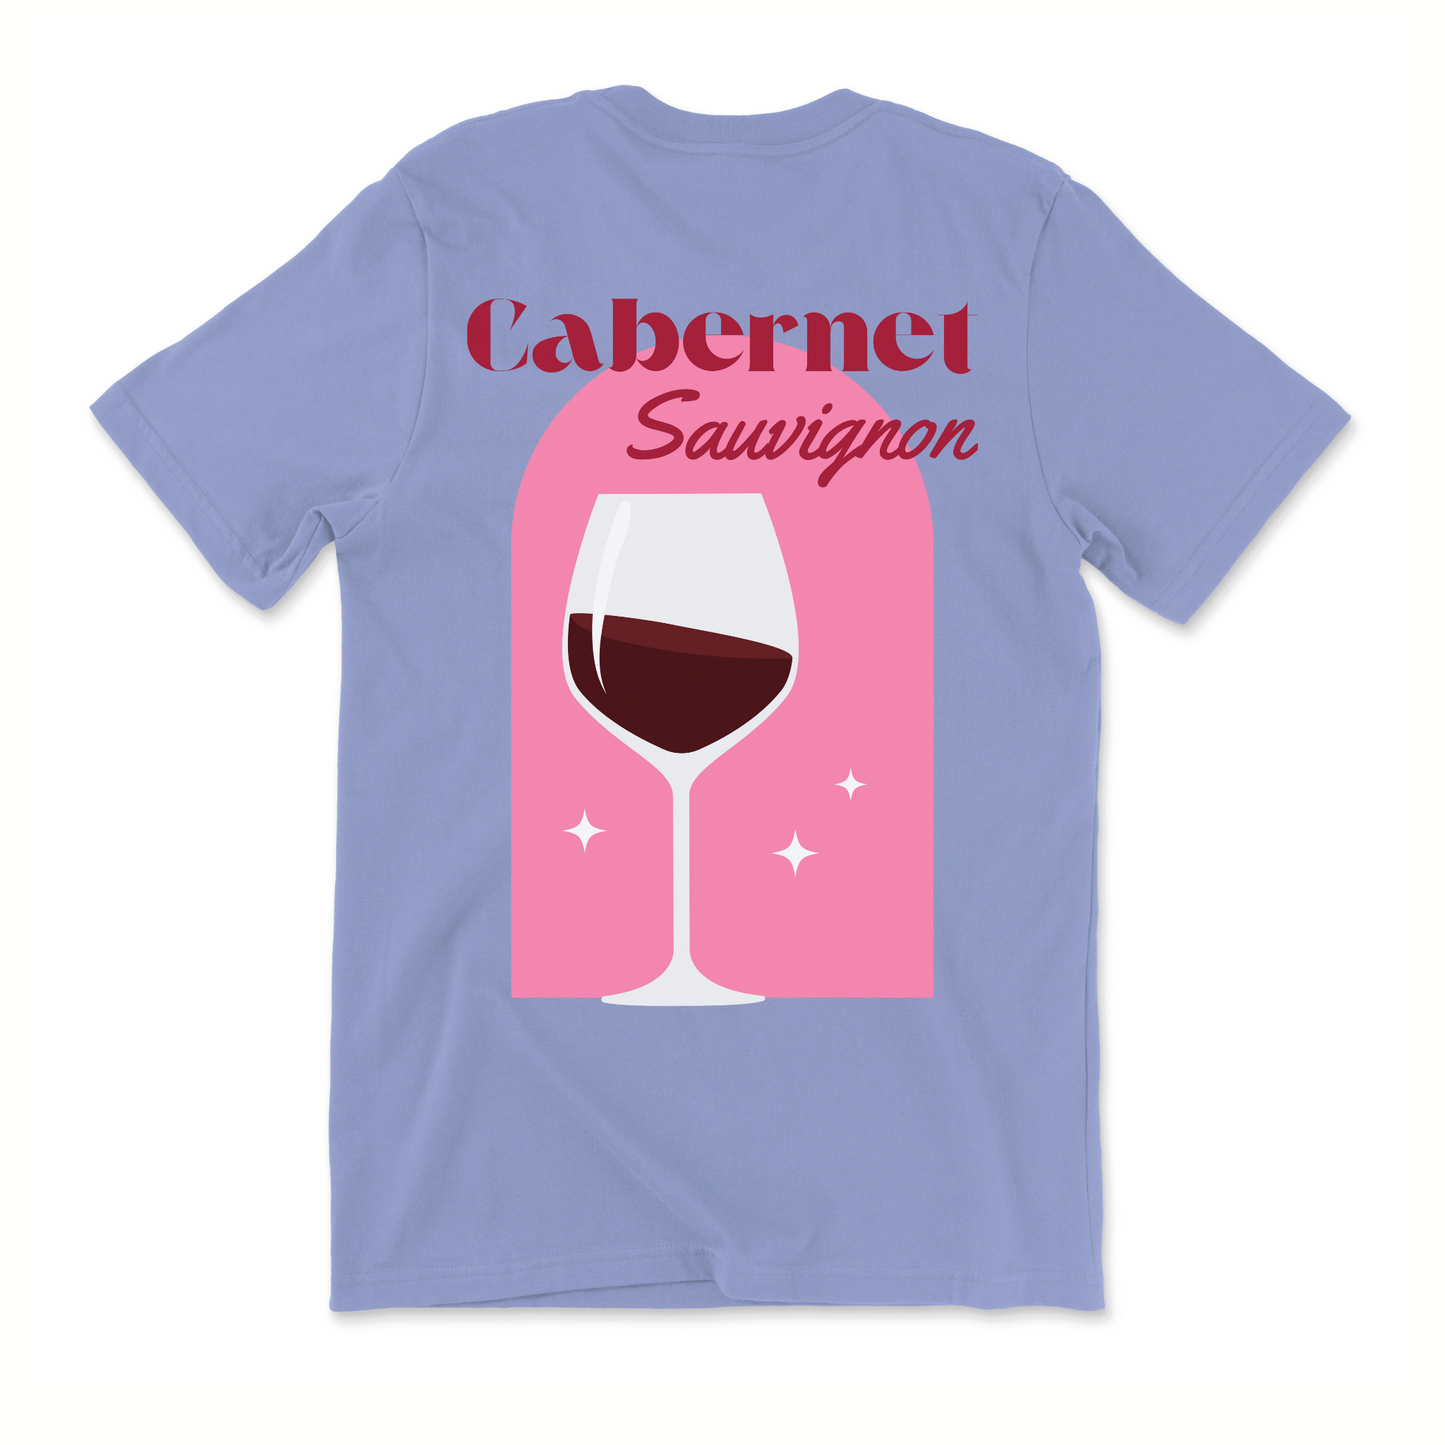 Cabernet Sauvignon T-Shirt